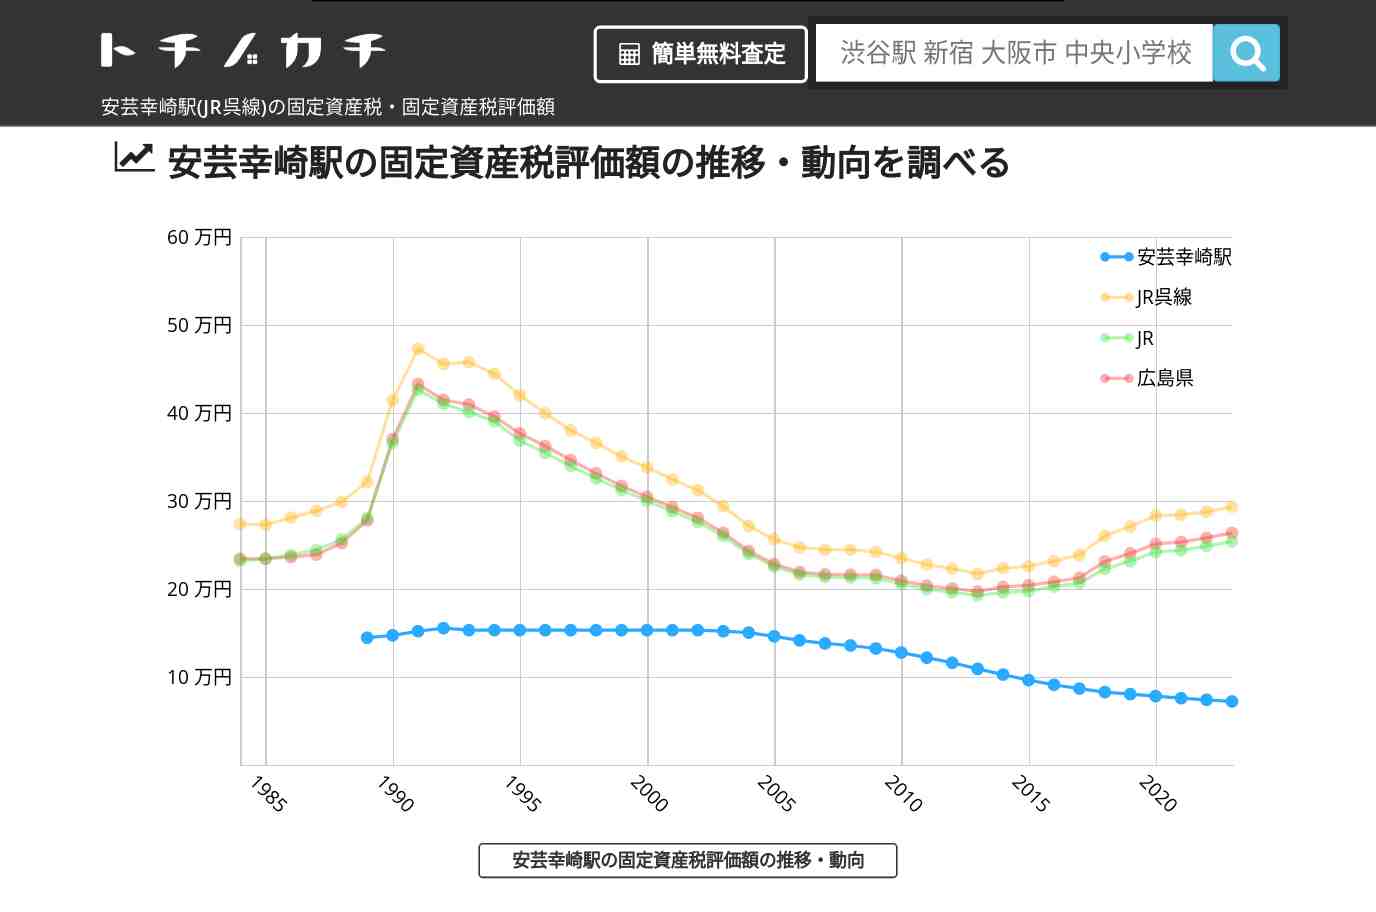 安芸幸崎駅(JR呉線)の固定資産税・固定資産税評価額 | トチノカチ